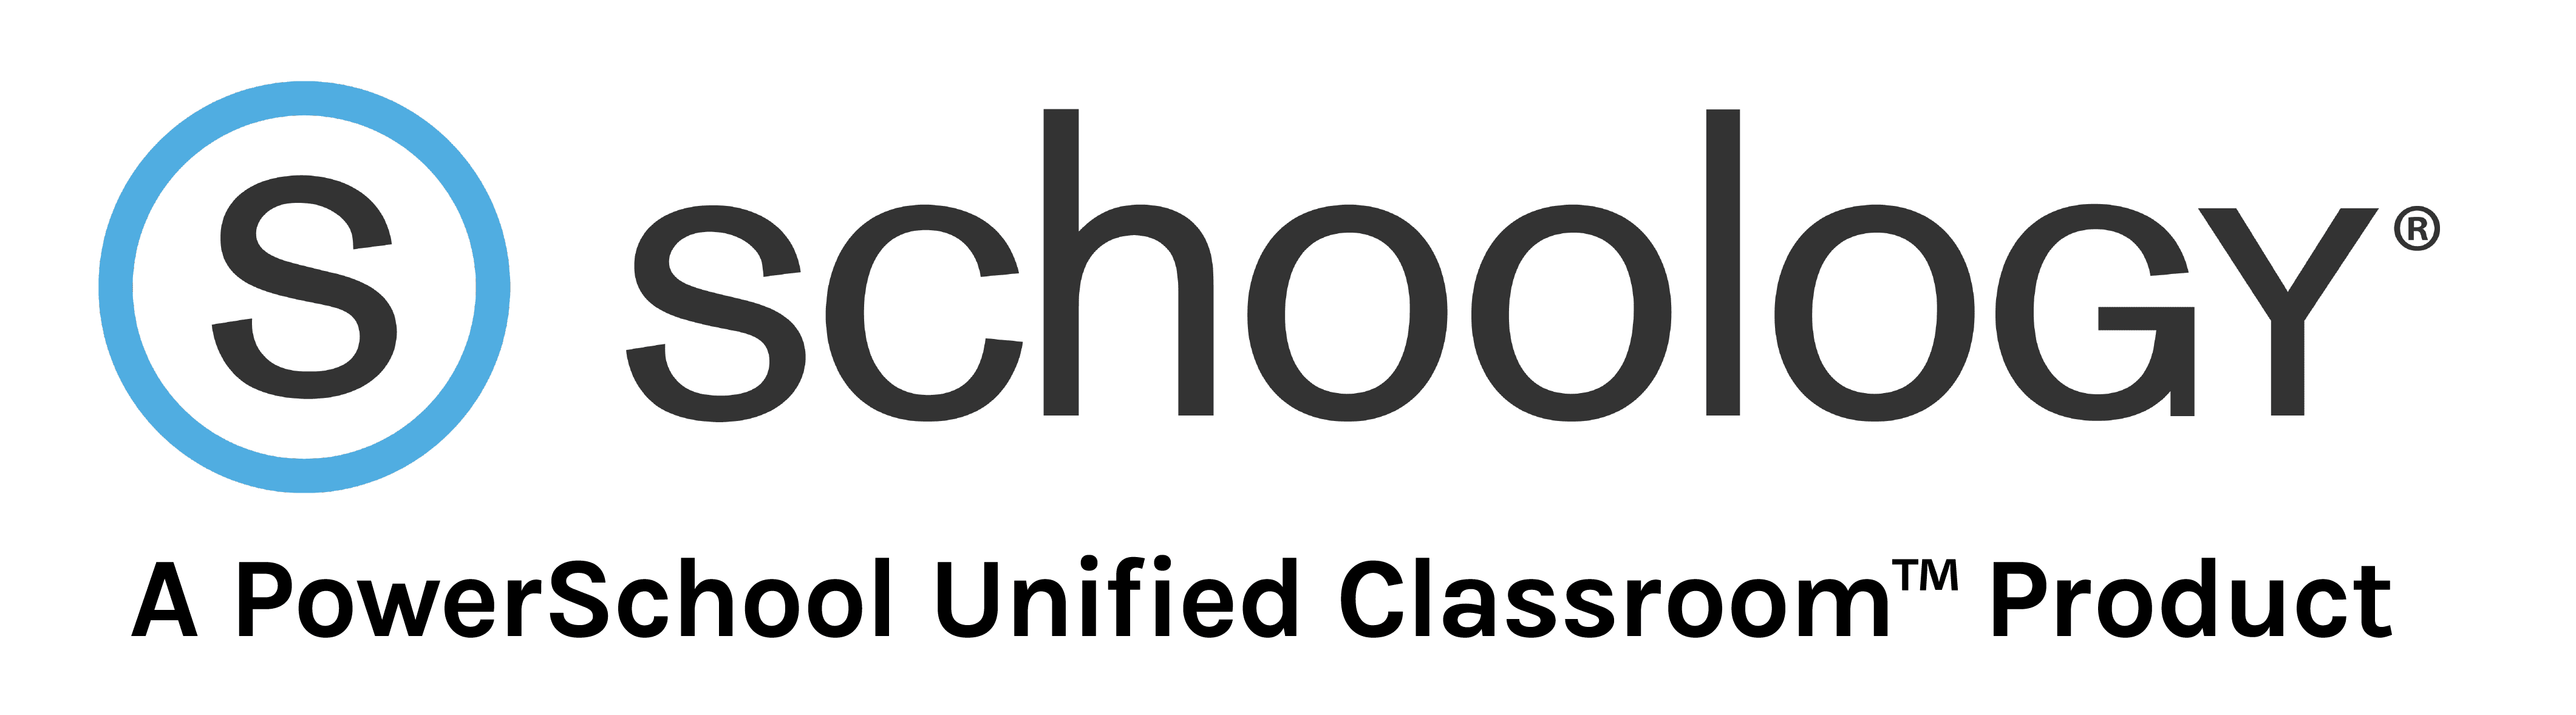 Logo of Schoology platform